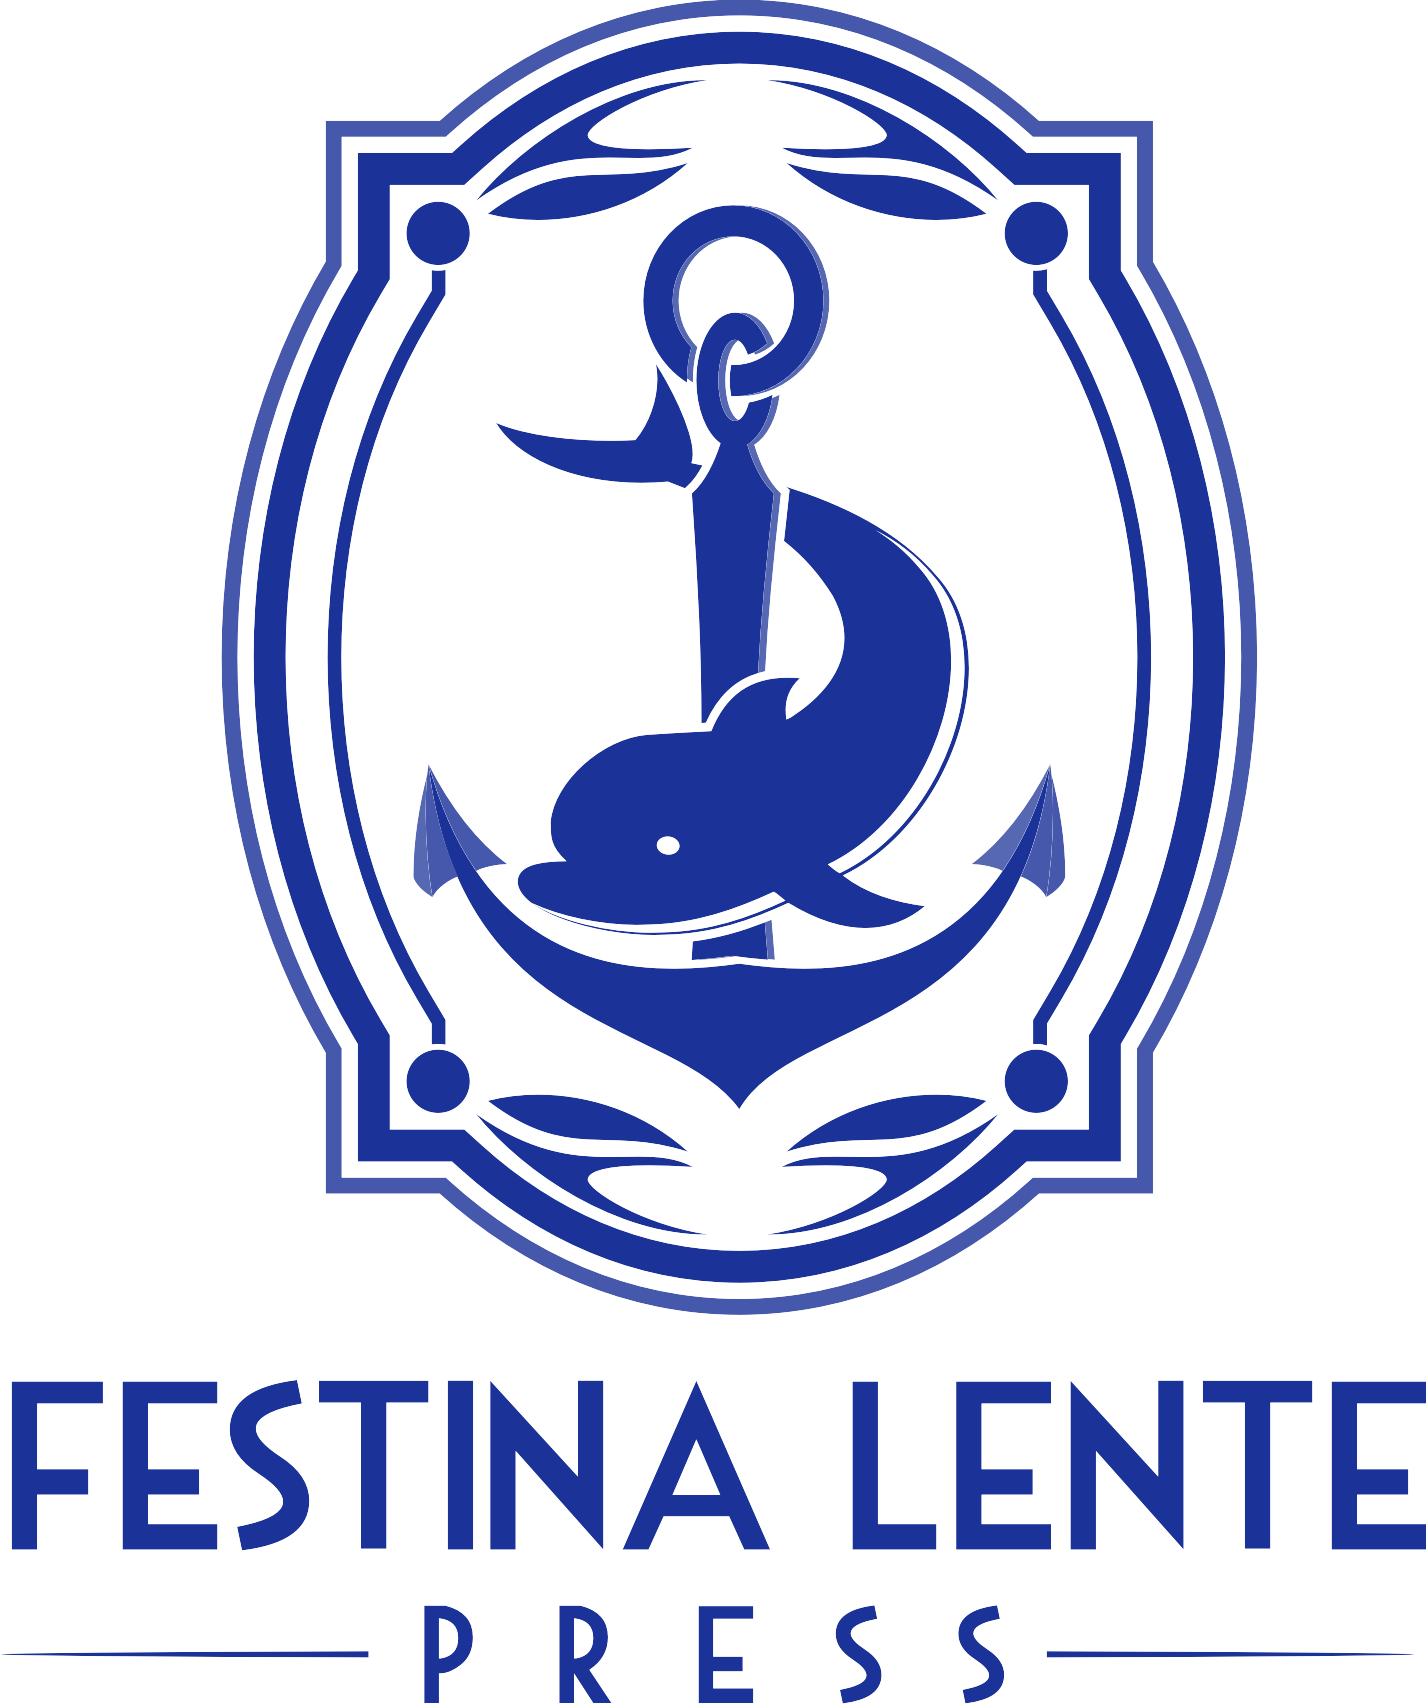 Festina Lente Press